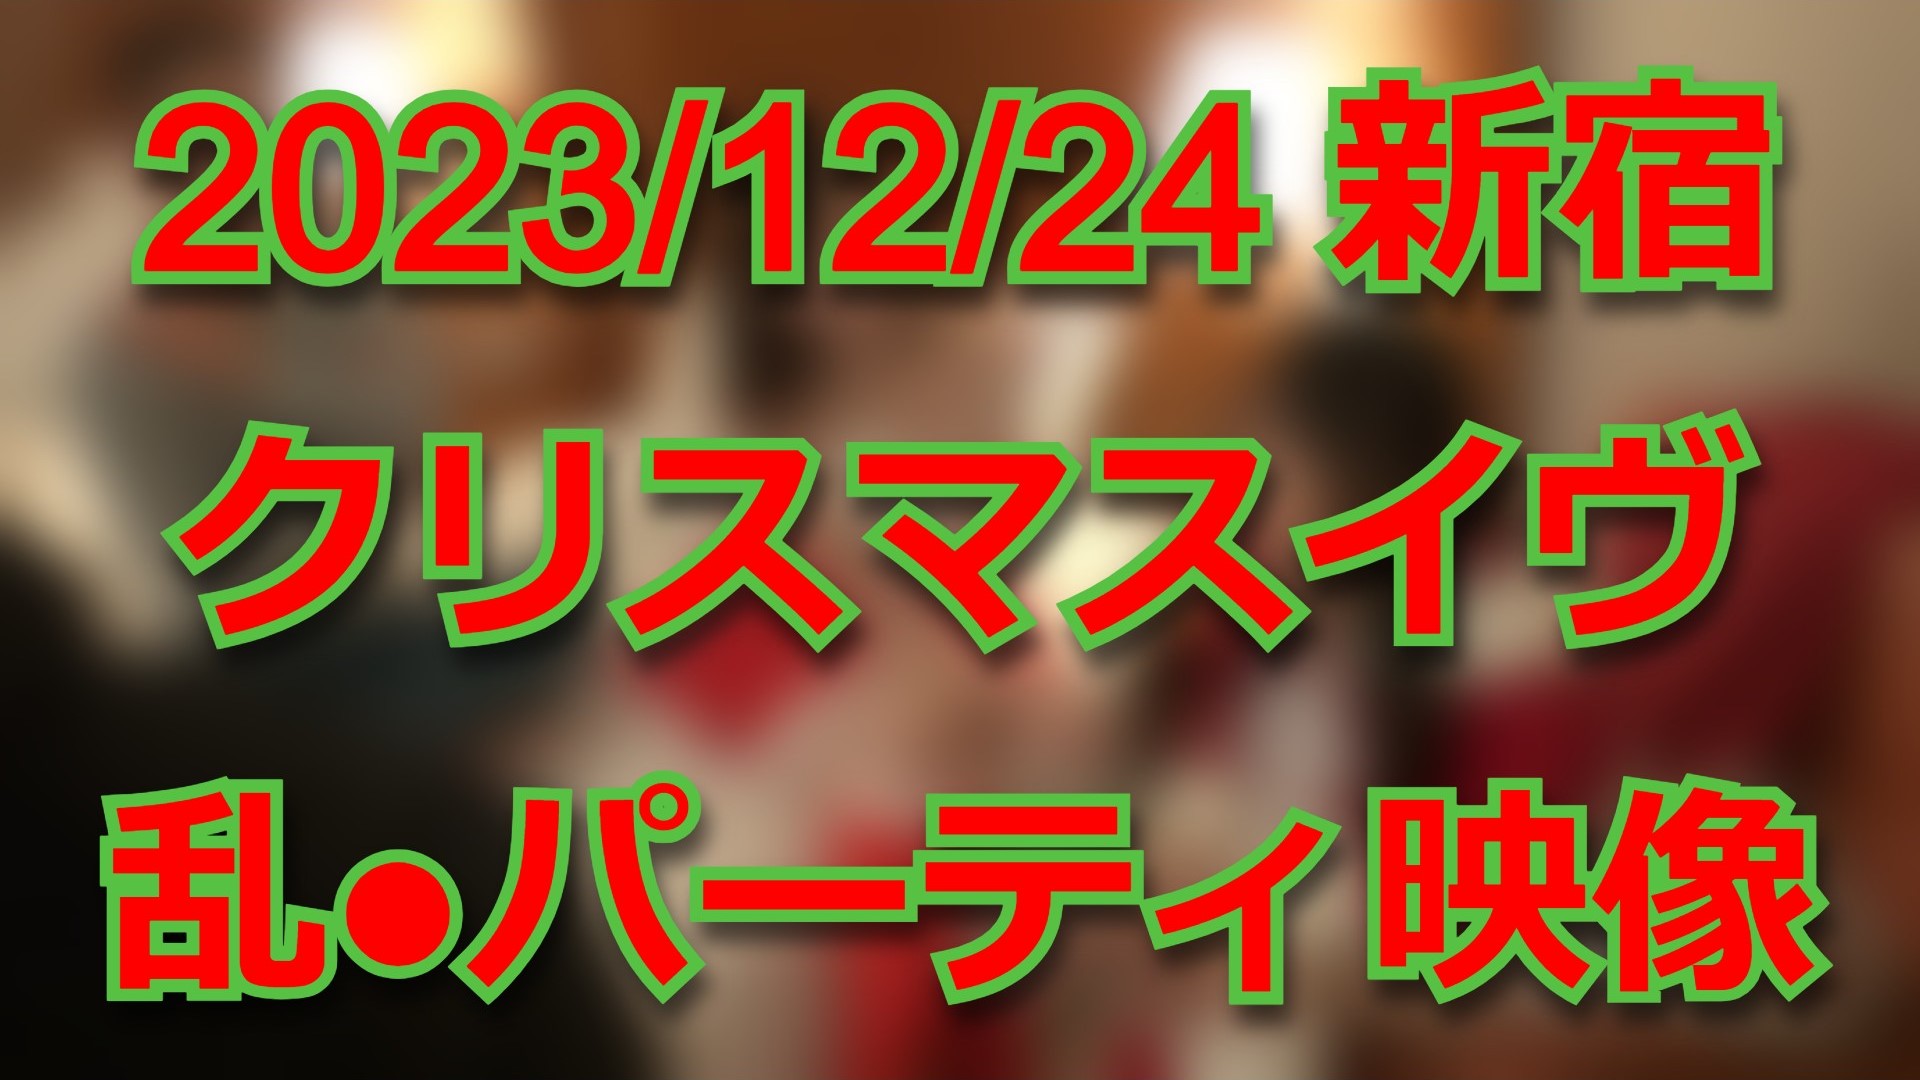 【個人撮影】昨年12月24日のクリスマスイヴに新宿で開催されていた乱交パーティの映像